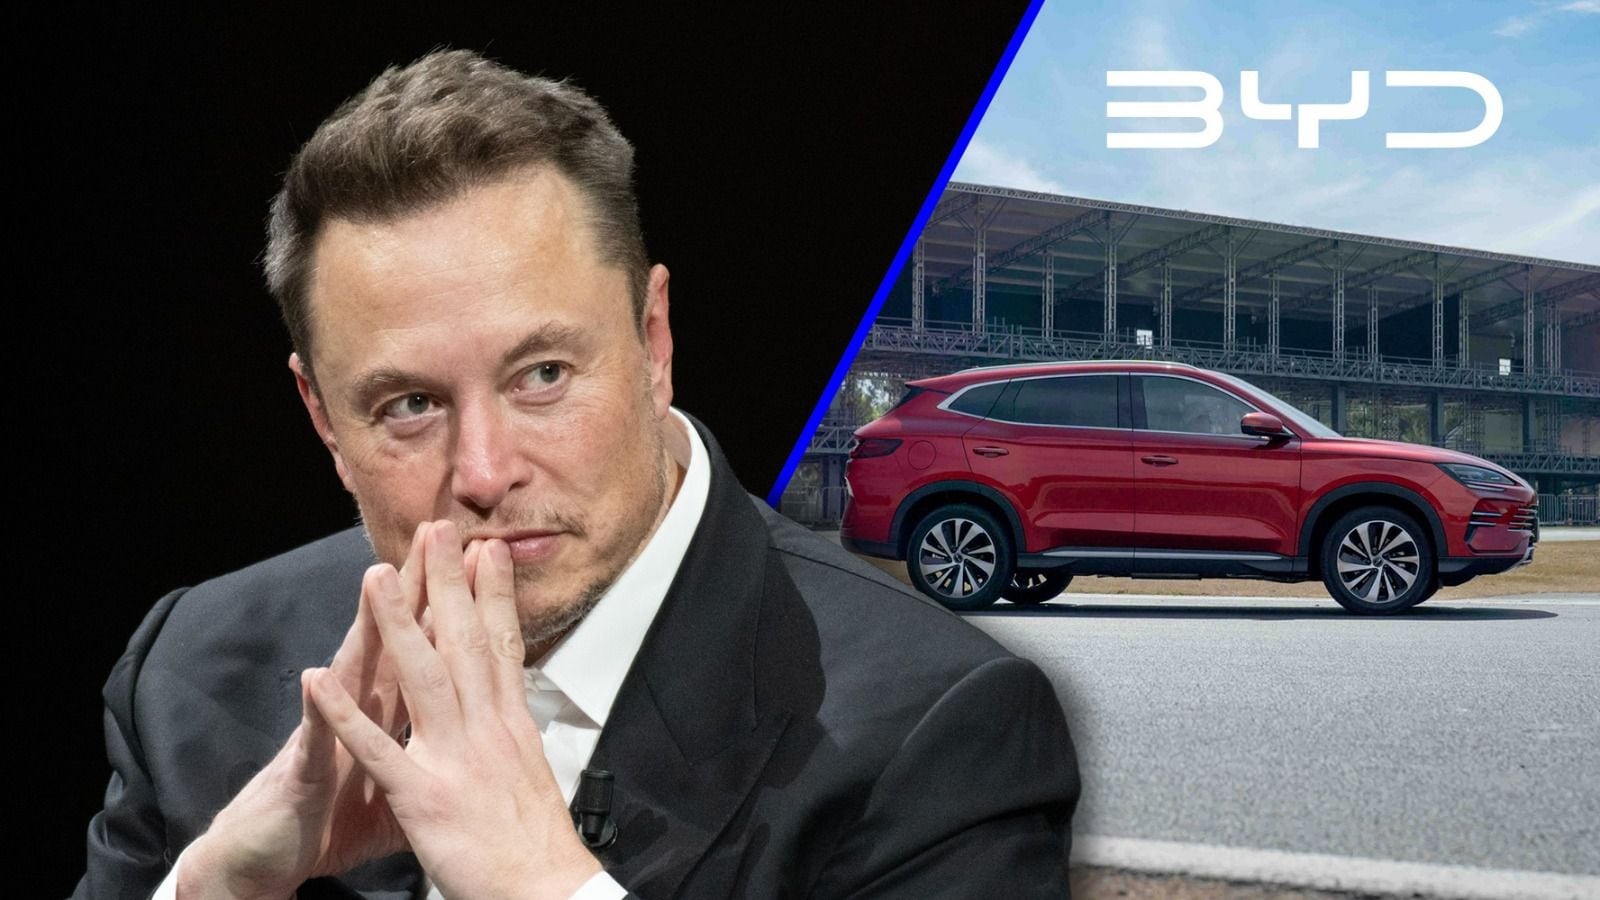 Tesla anunció sus planes de construir una planta en México... pero no ha habido avances en el proyecto.